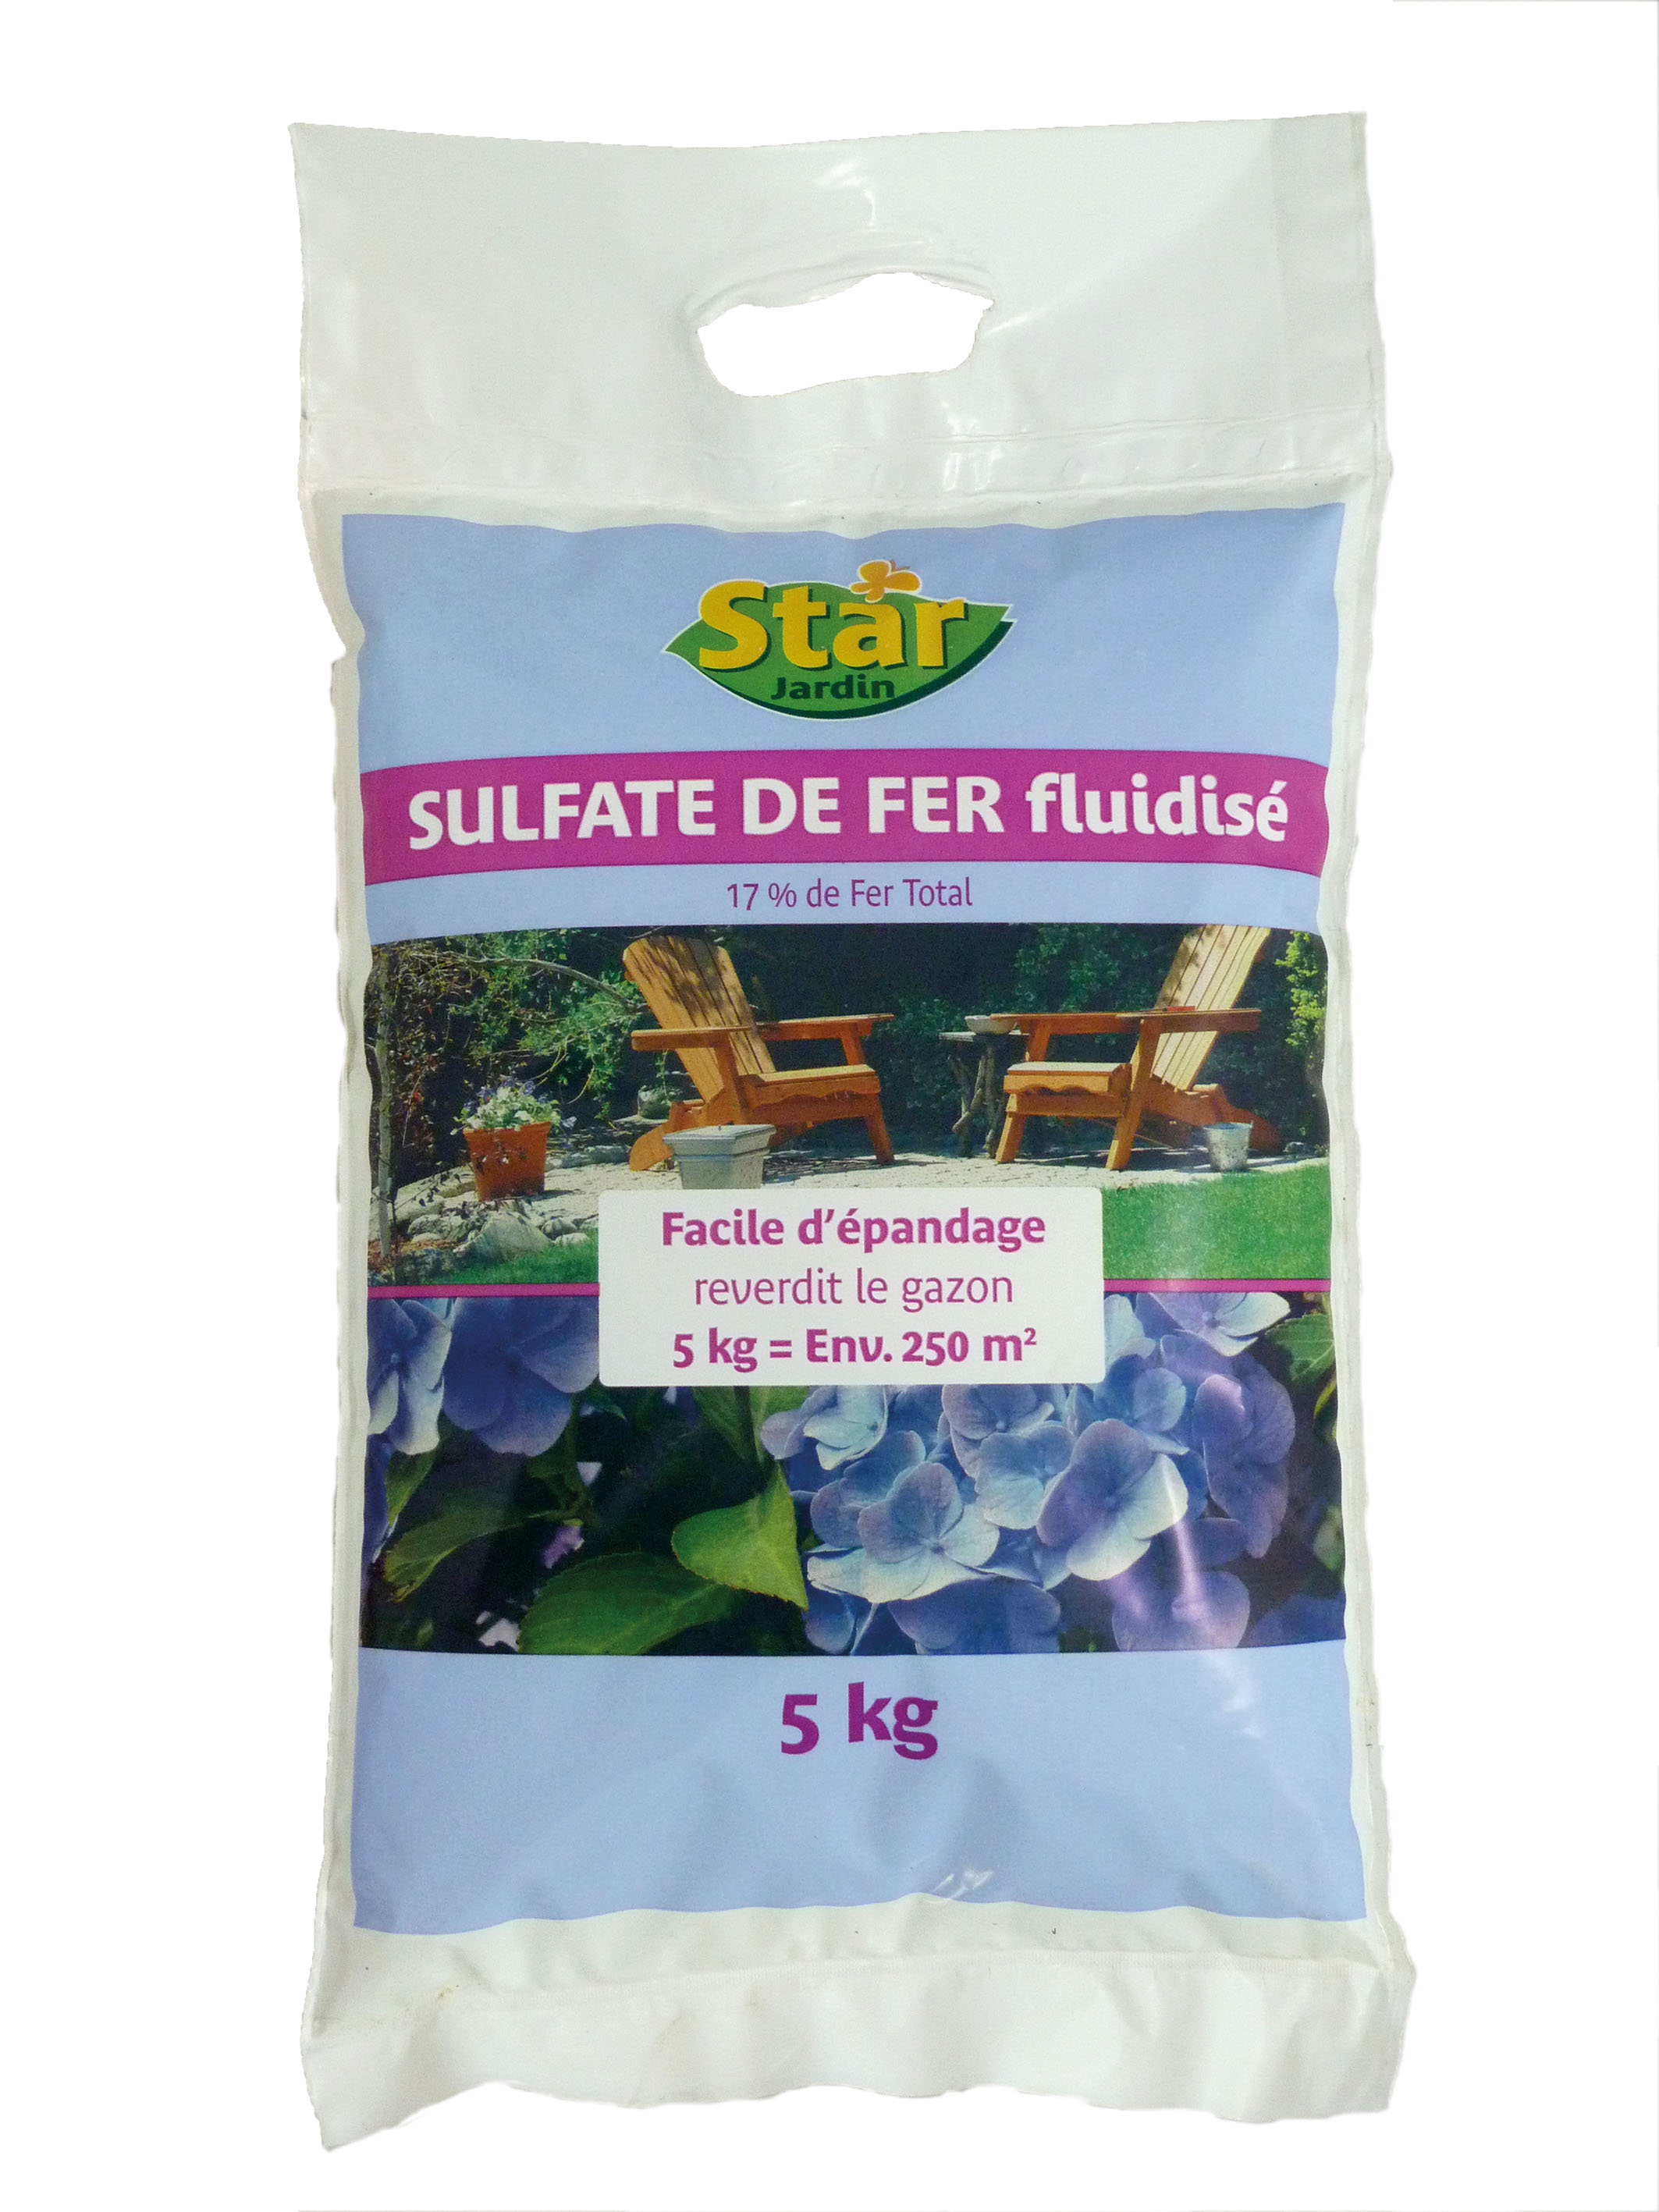 Sulfate de fer fluidise - 5 kg 